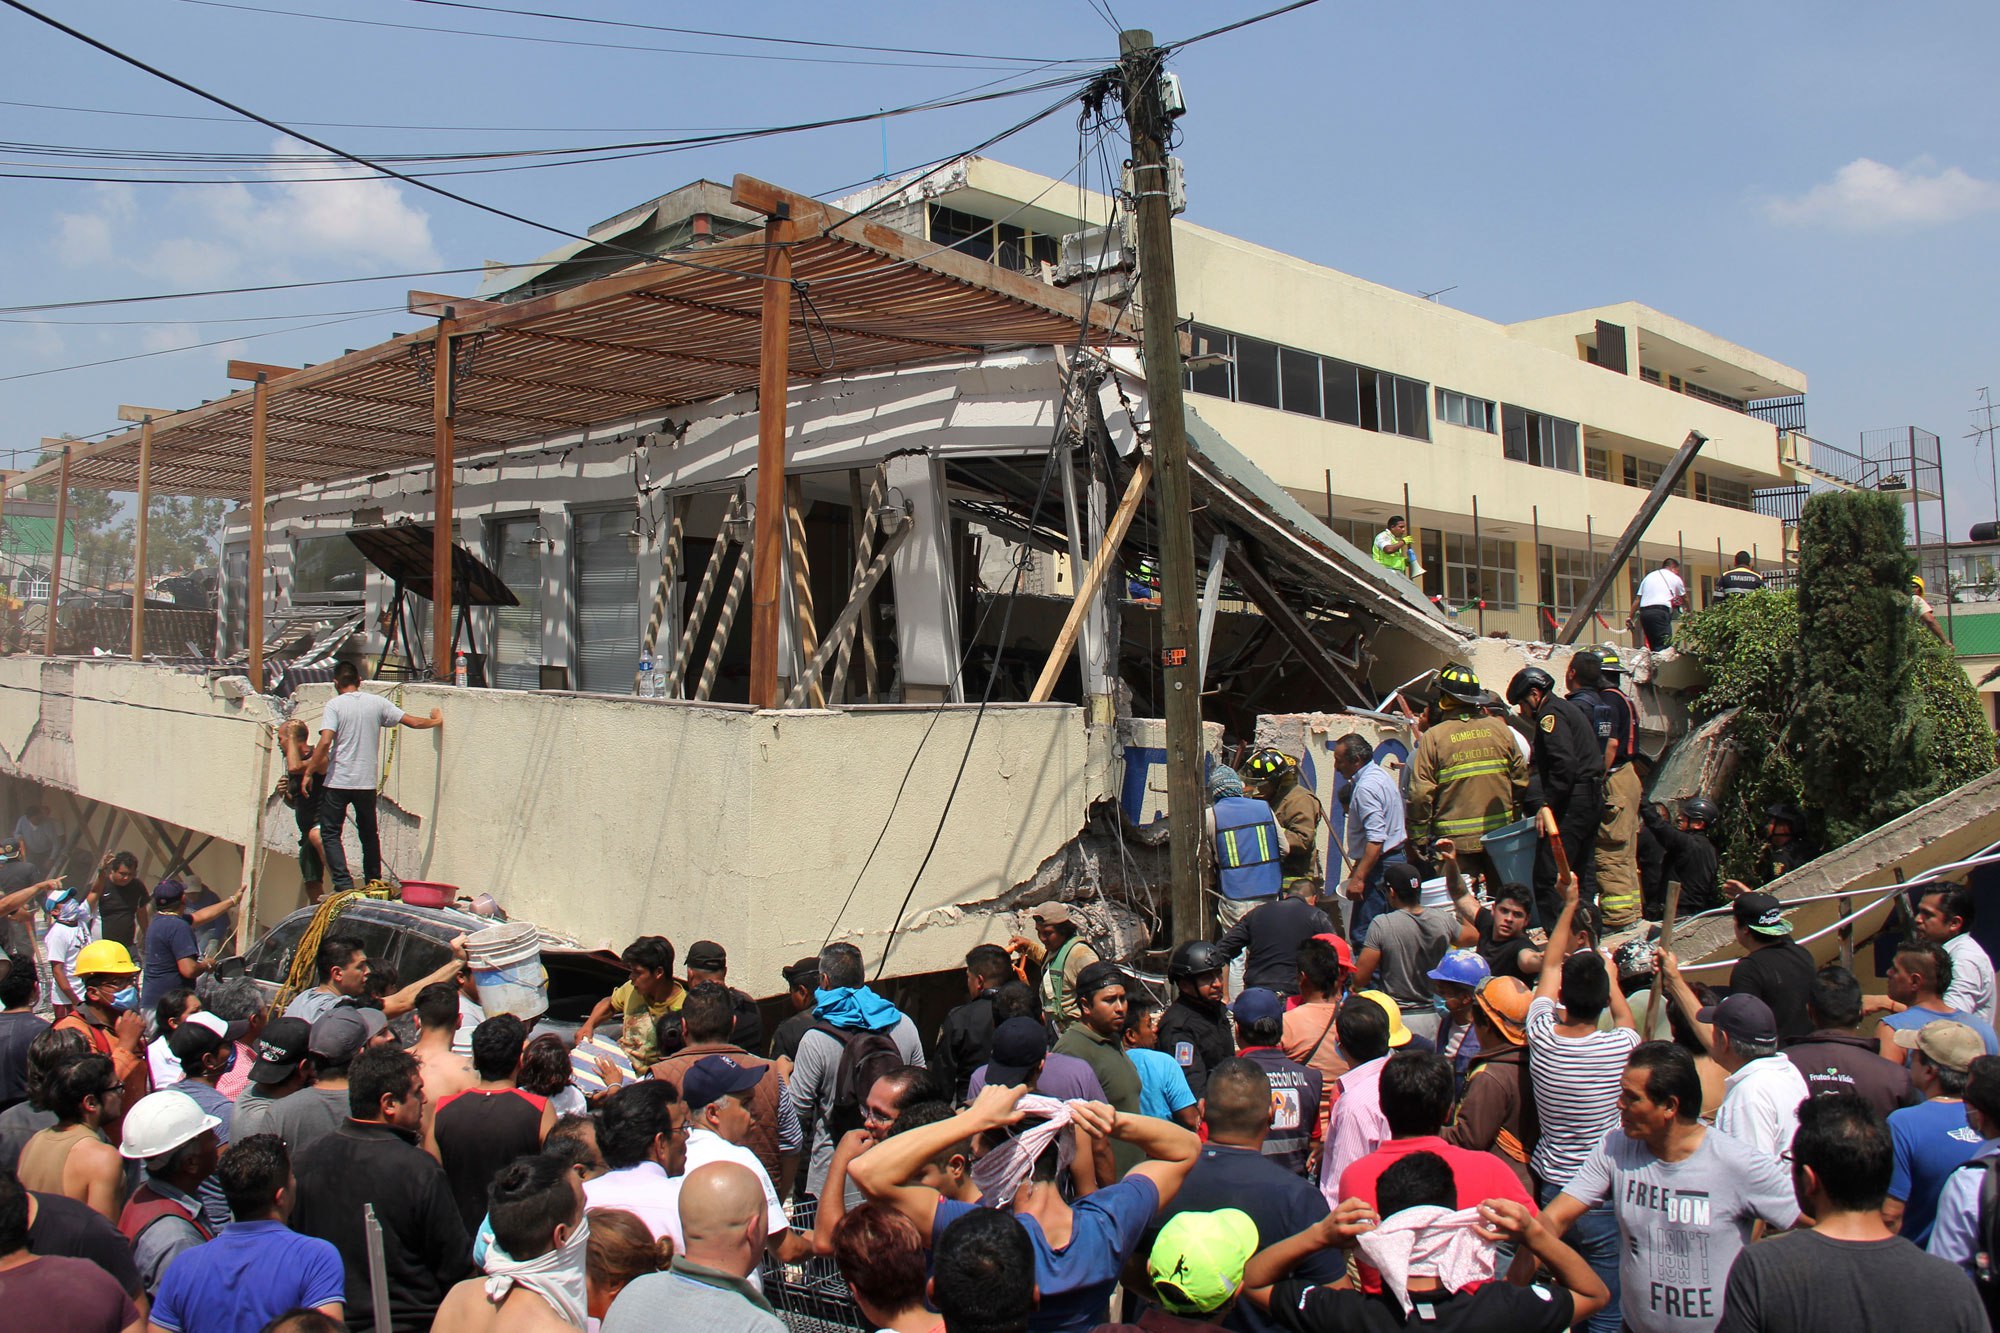 وقوع زلزله شدید در مکزیک ده ها کشته برجای گذاشت + تصاویر